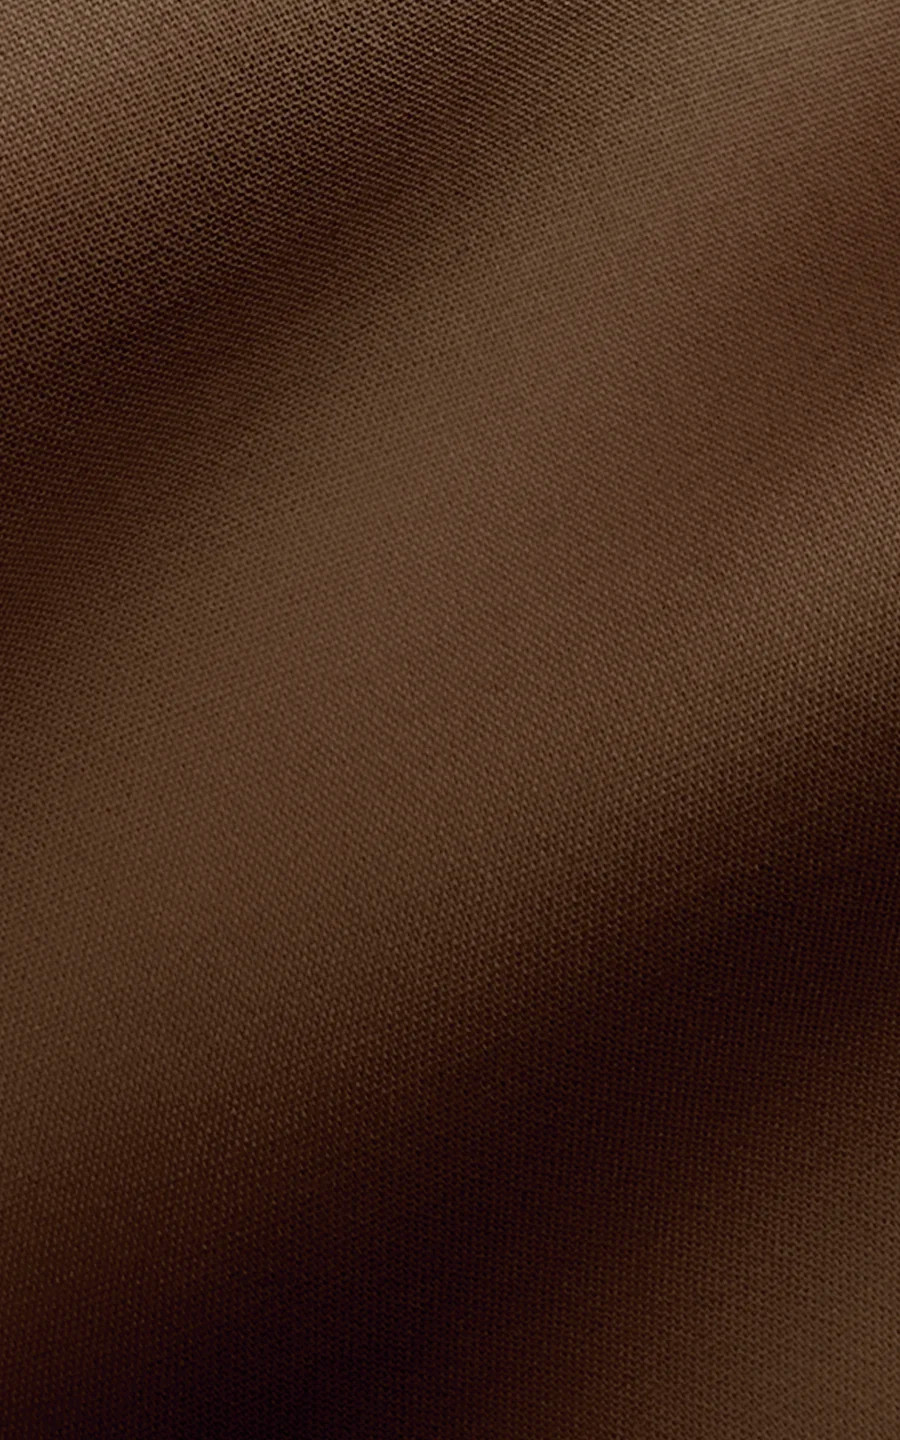 Mauve Semi Stitched Pure Cotton Suit Set (3 piece)